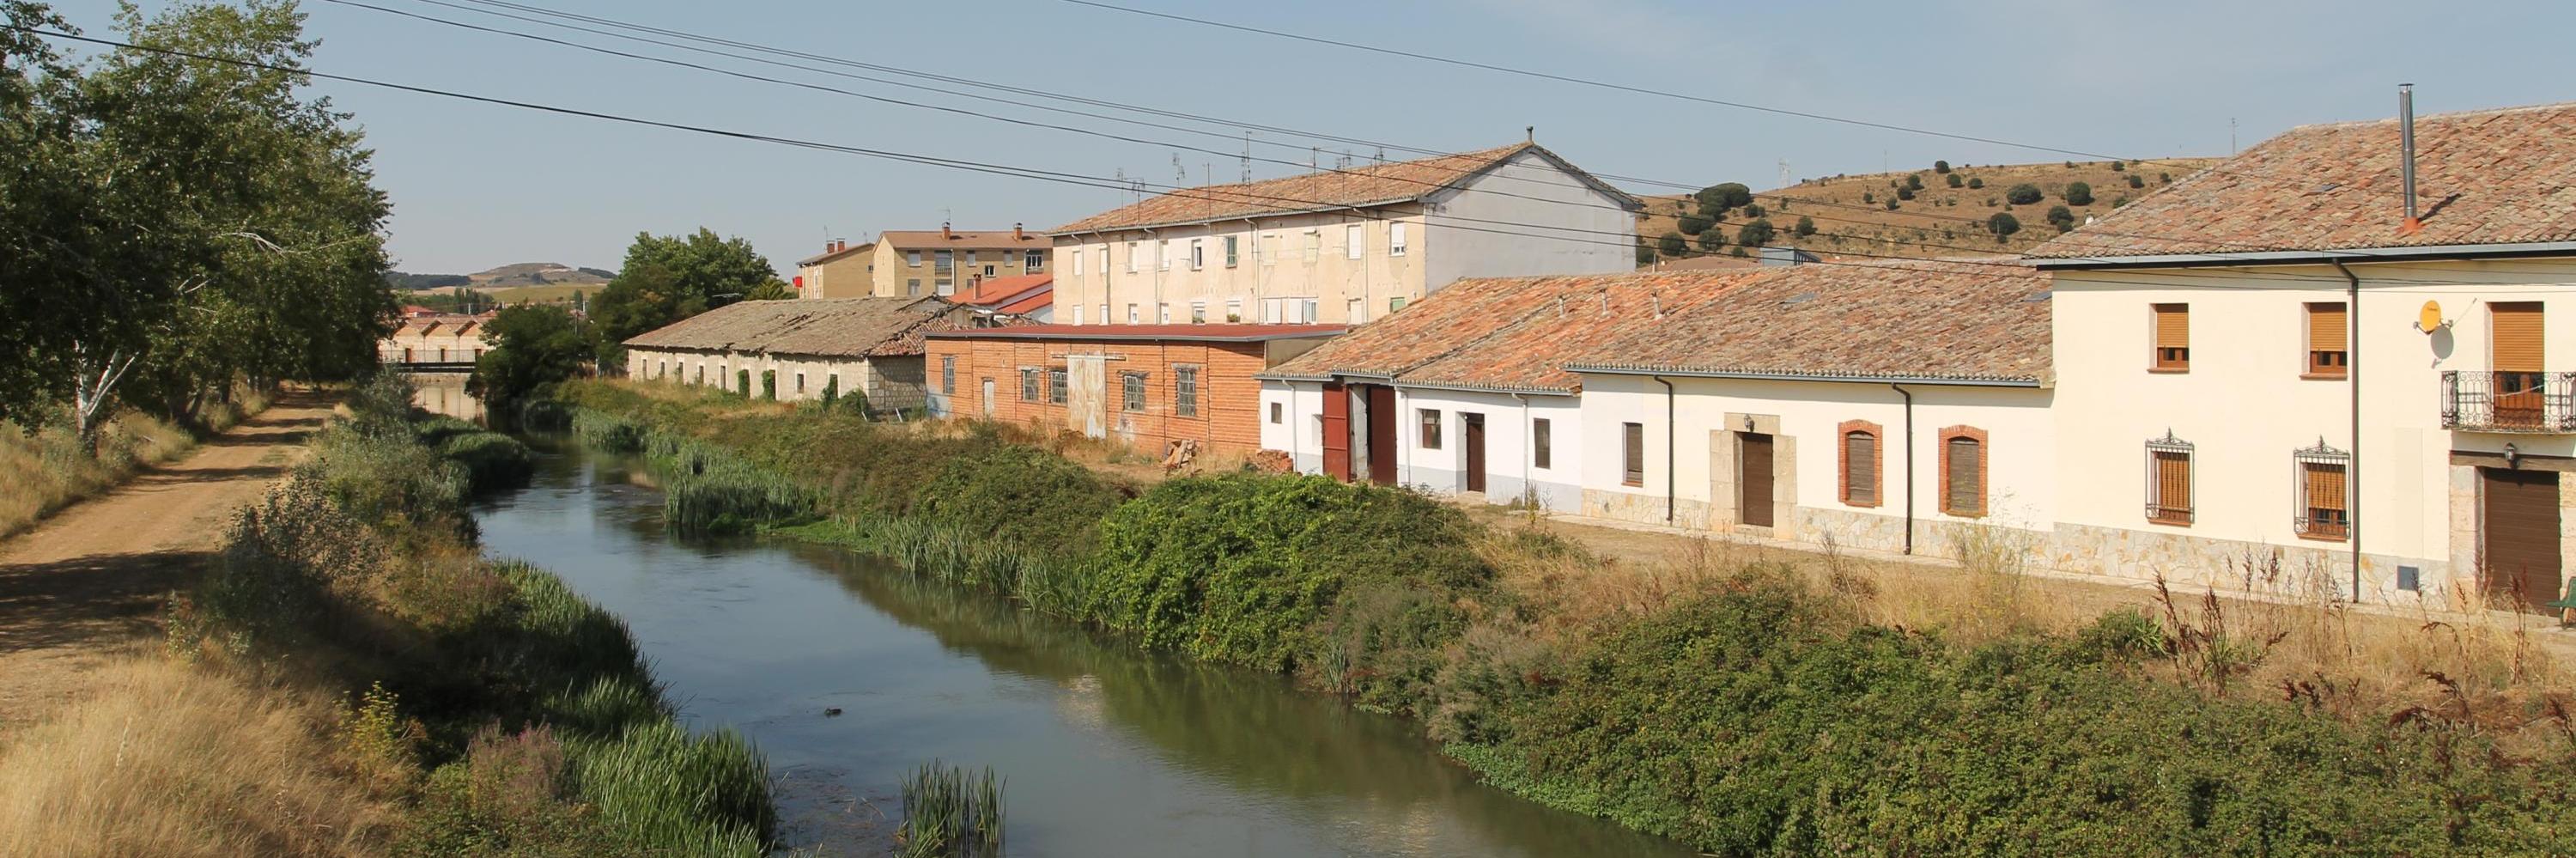 Alar del Rey, Canal de Castilla